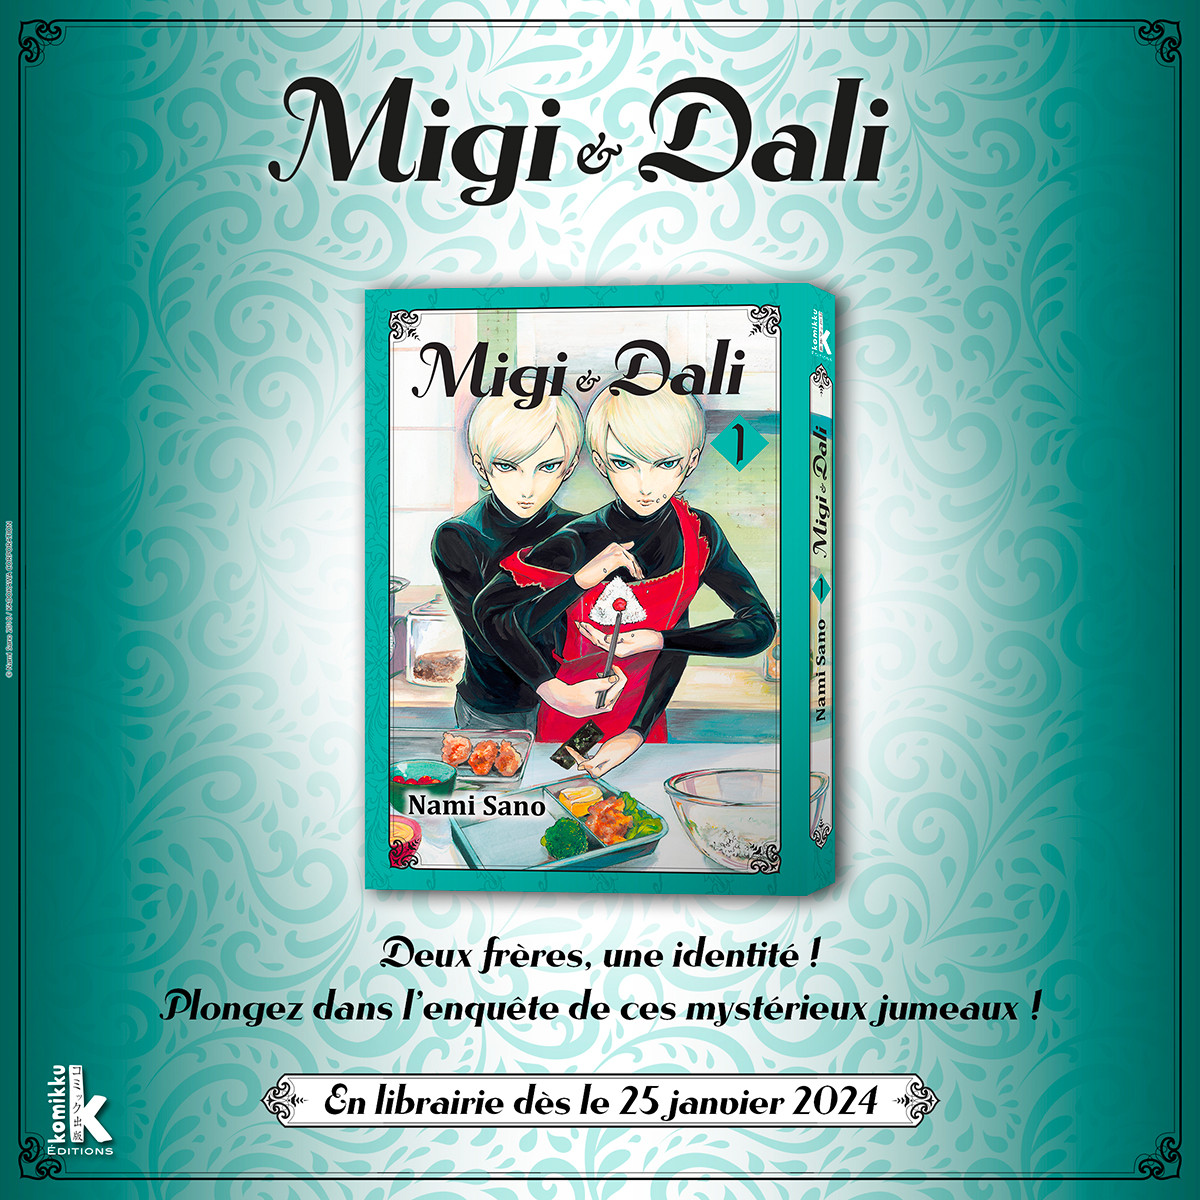 Couverture du manga Migi & Dali annoncé par Komikku